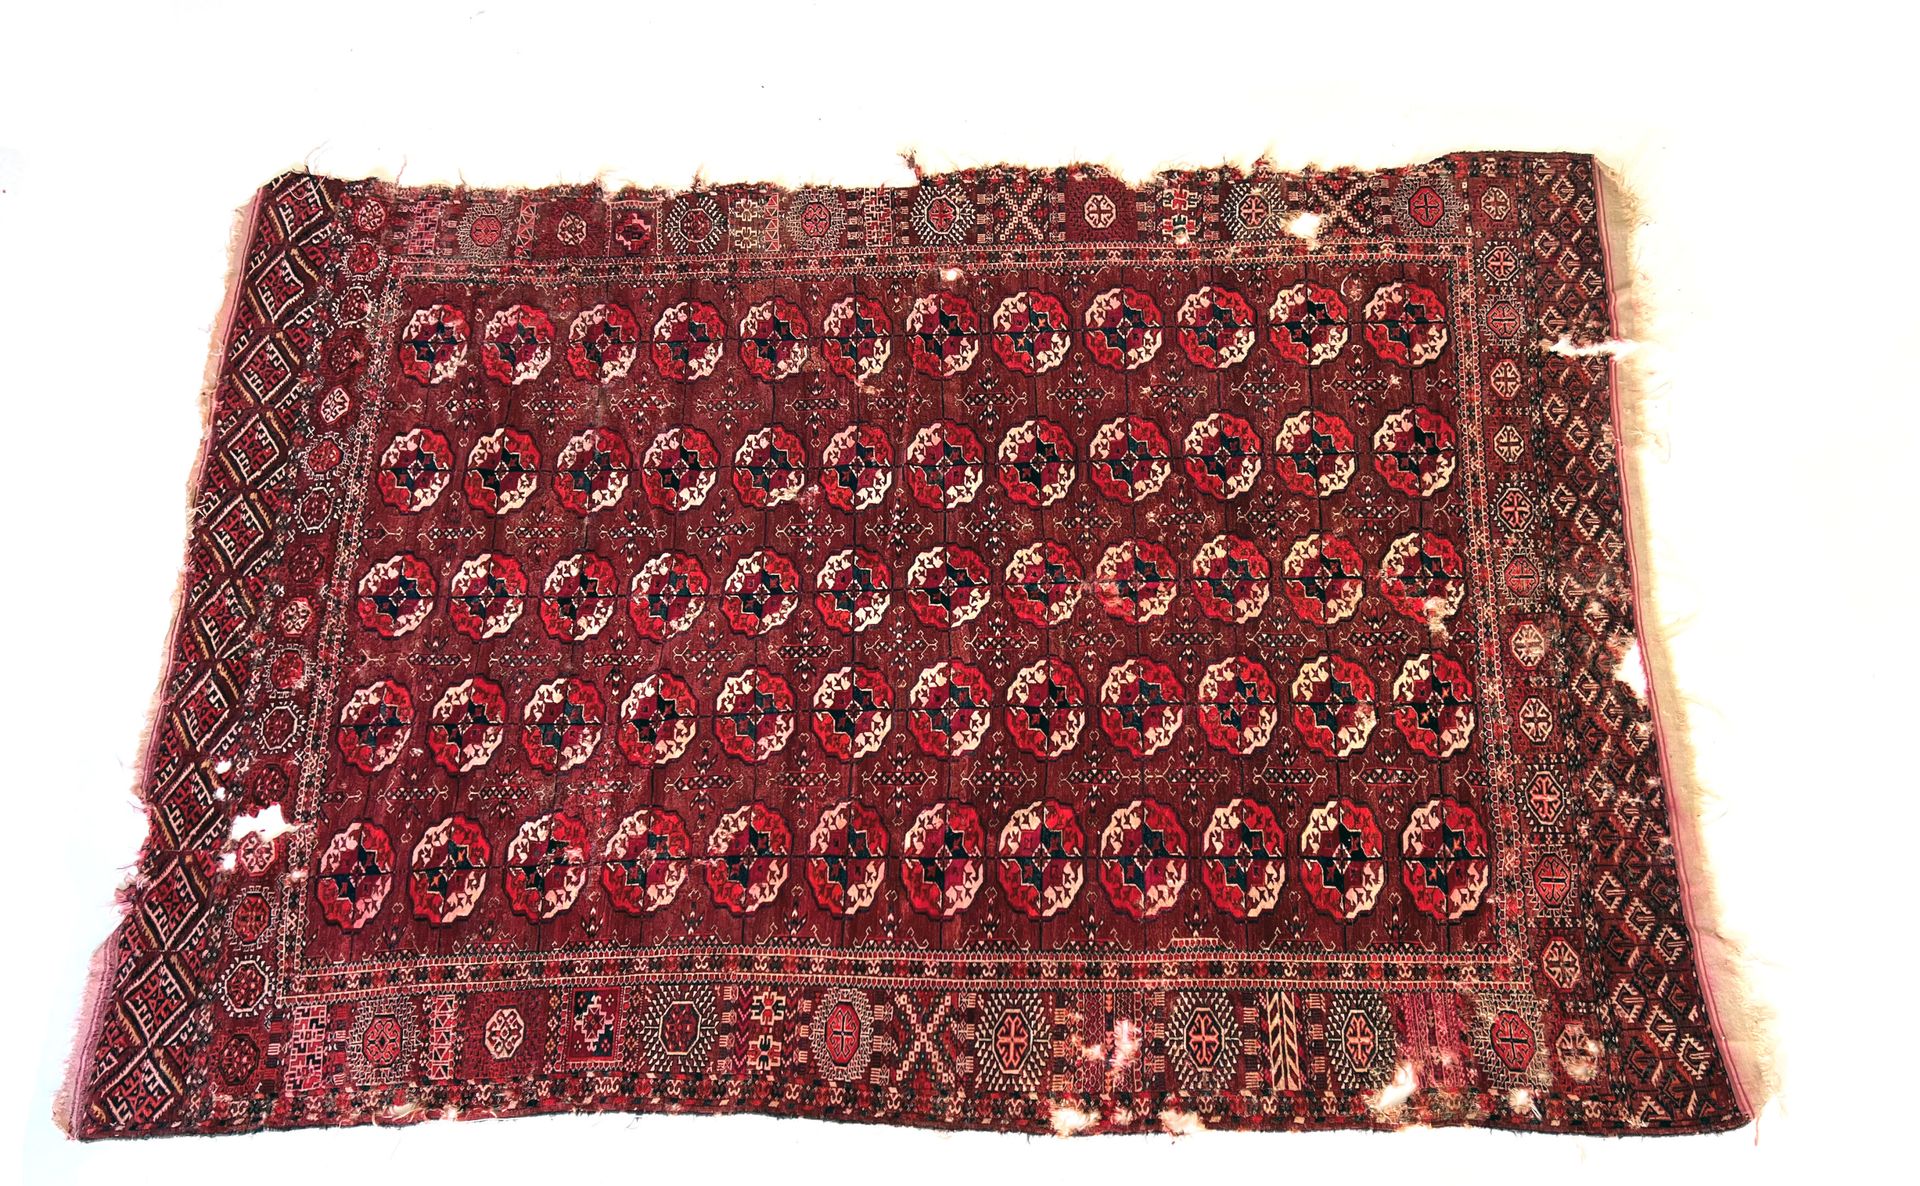 Null 东方的地毯

布哈拉地毯，19世纪，葡萄酒和红颜色。饰有五排居士，宽边。

磨损、孔洞和缺失部分，特别是在边框上 - 长2.90 x 宽2.15厘米